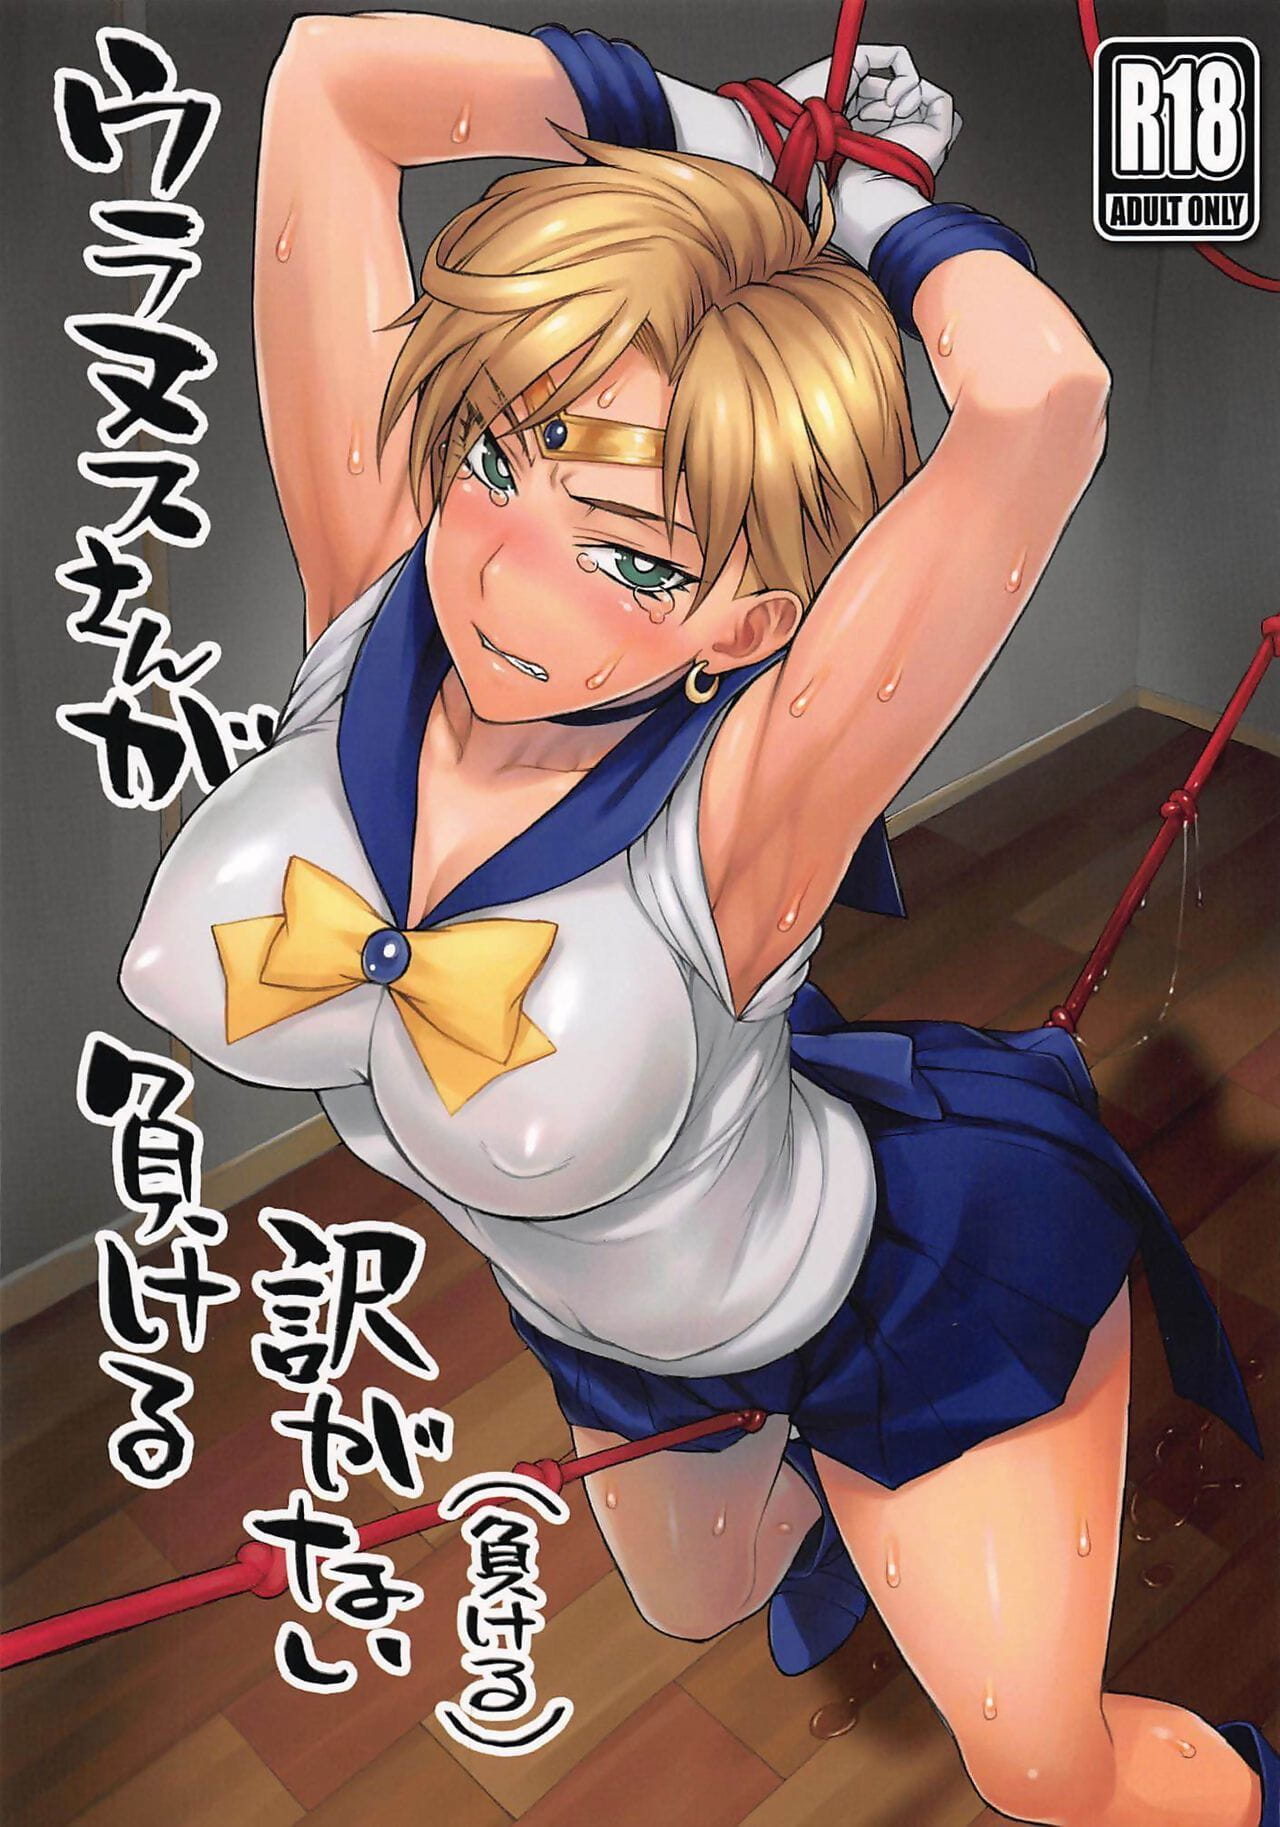 comic1☆16 nagaredamaya bang! cô thiên vương tinh san ga makeru tỉnh ga nai makeru nội dung chưa được xếp thành thủy thủ Trăng tiếng tây ban nha trượt ...